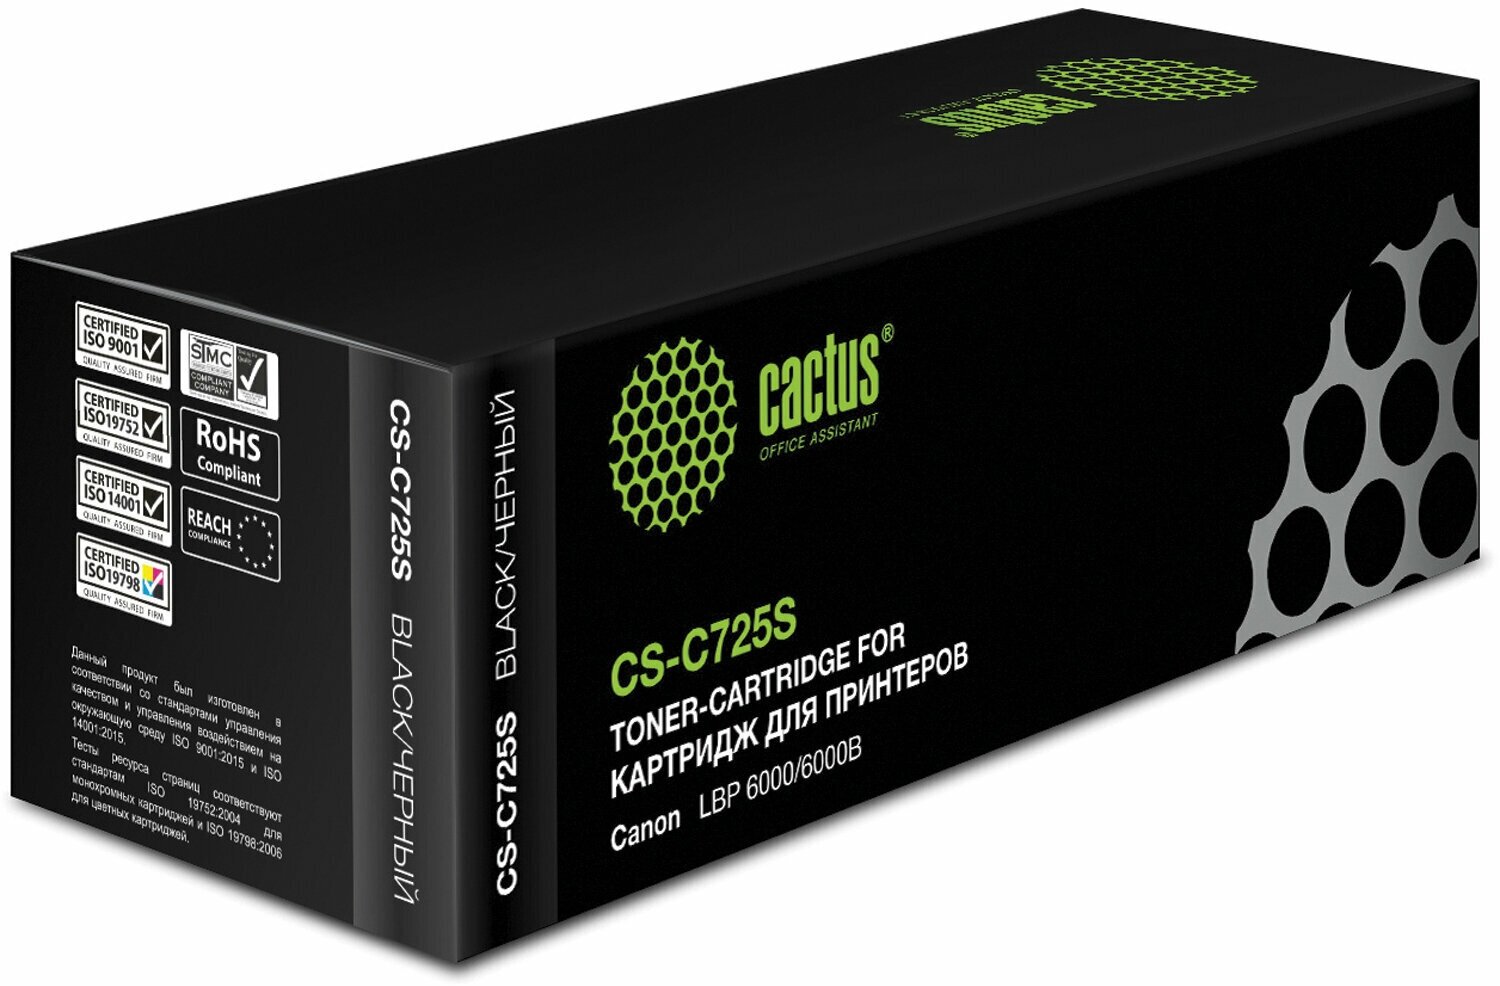 Картридж лазерный CACTUS (CS-C725S) для CANON LBP-6000/6020/6020B, ресурс 1600 страниц /Квант продажи 1 ед./